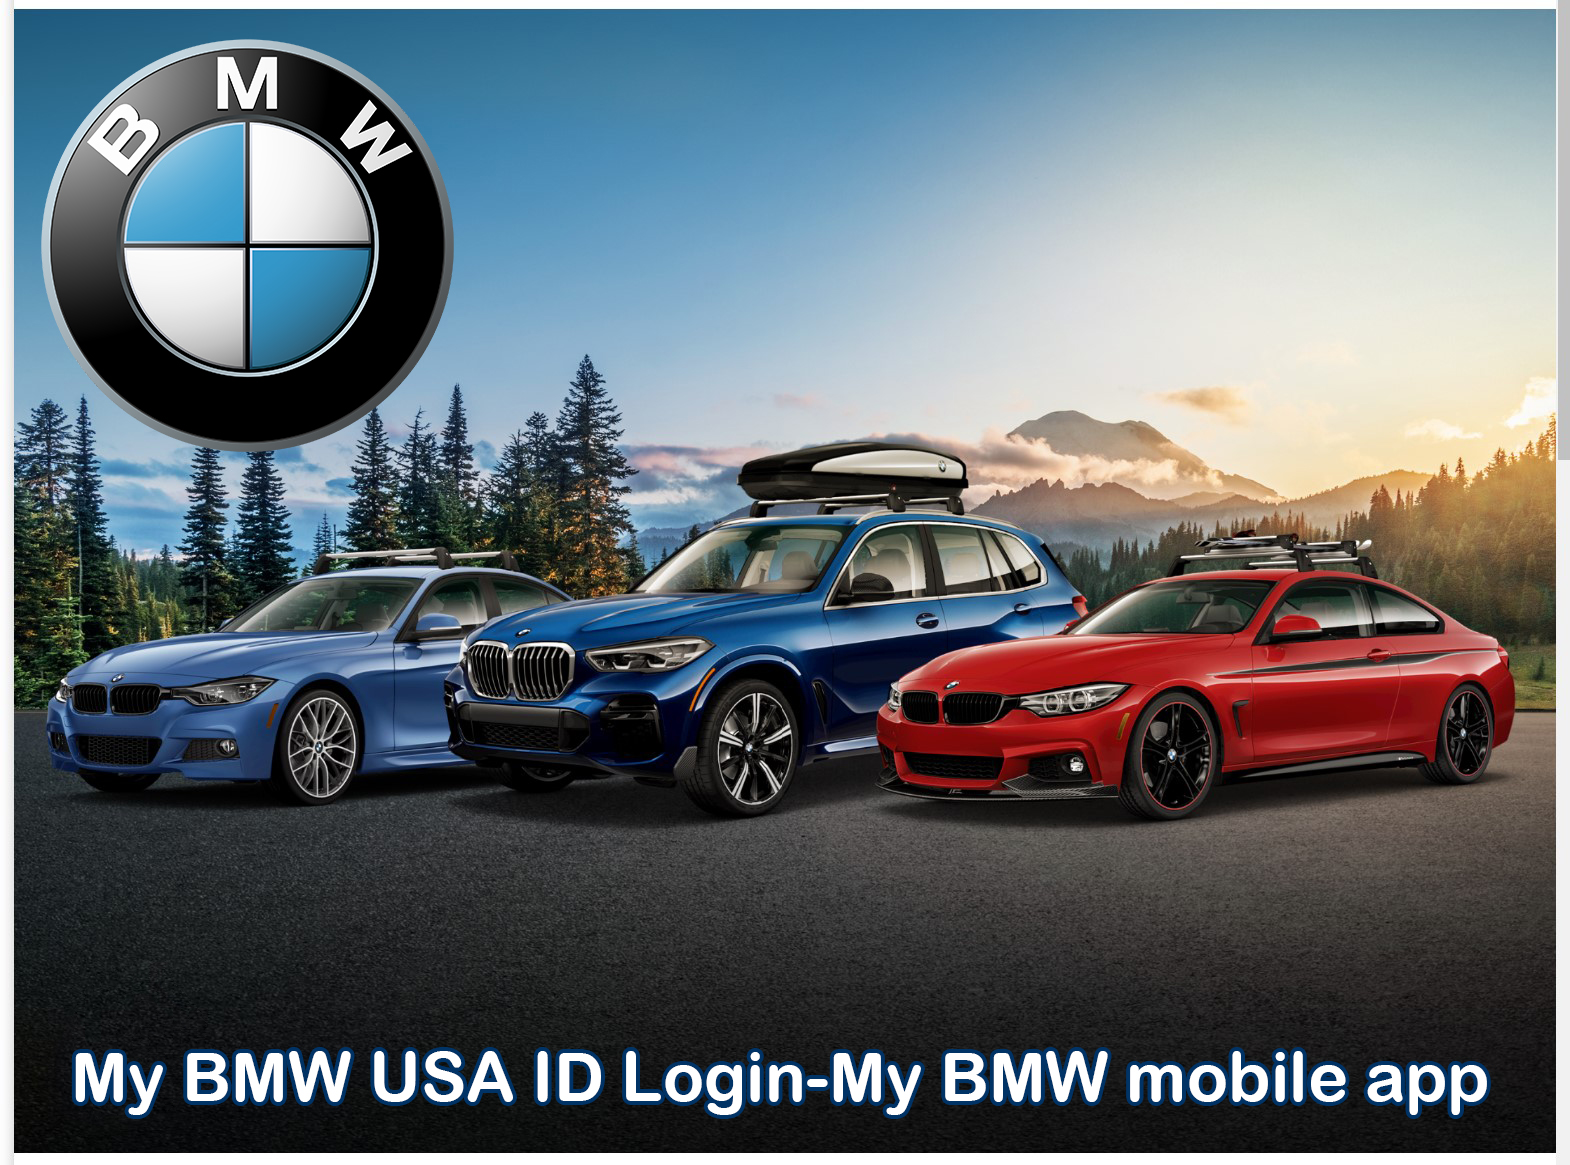 My BMW USA ID Login